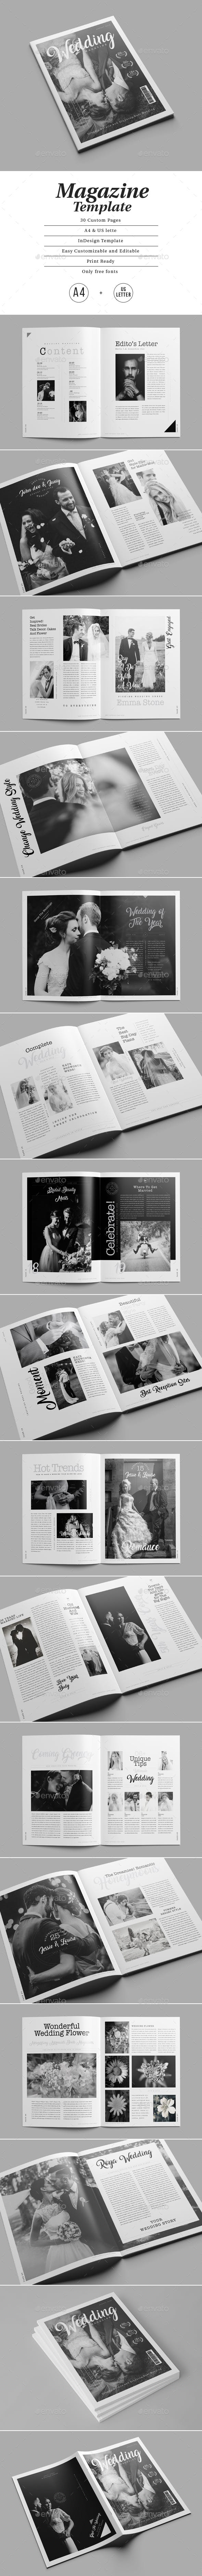 时尚优雅的婚礼杂志宣传册设计模板插图